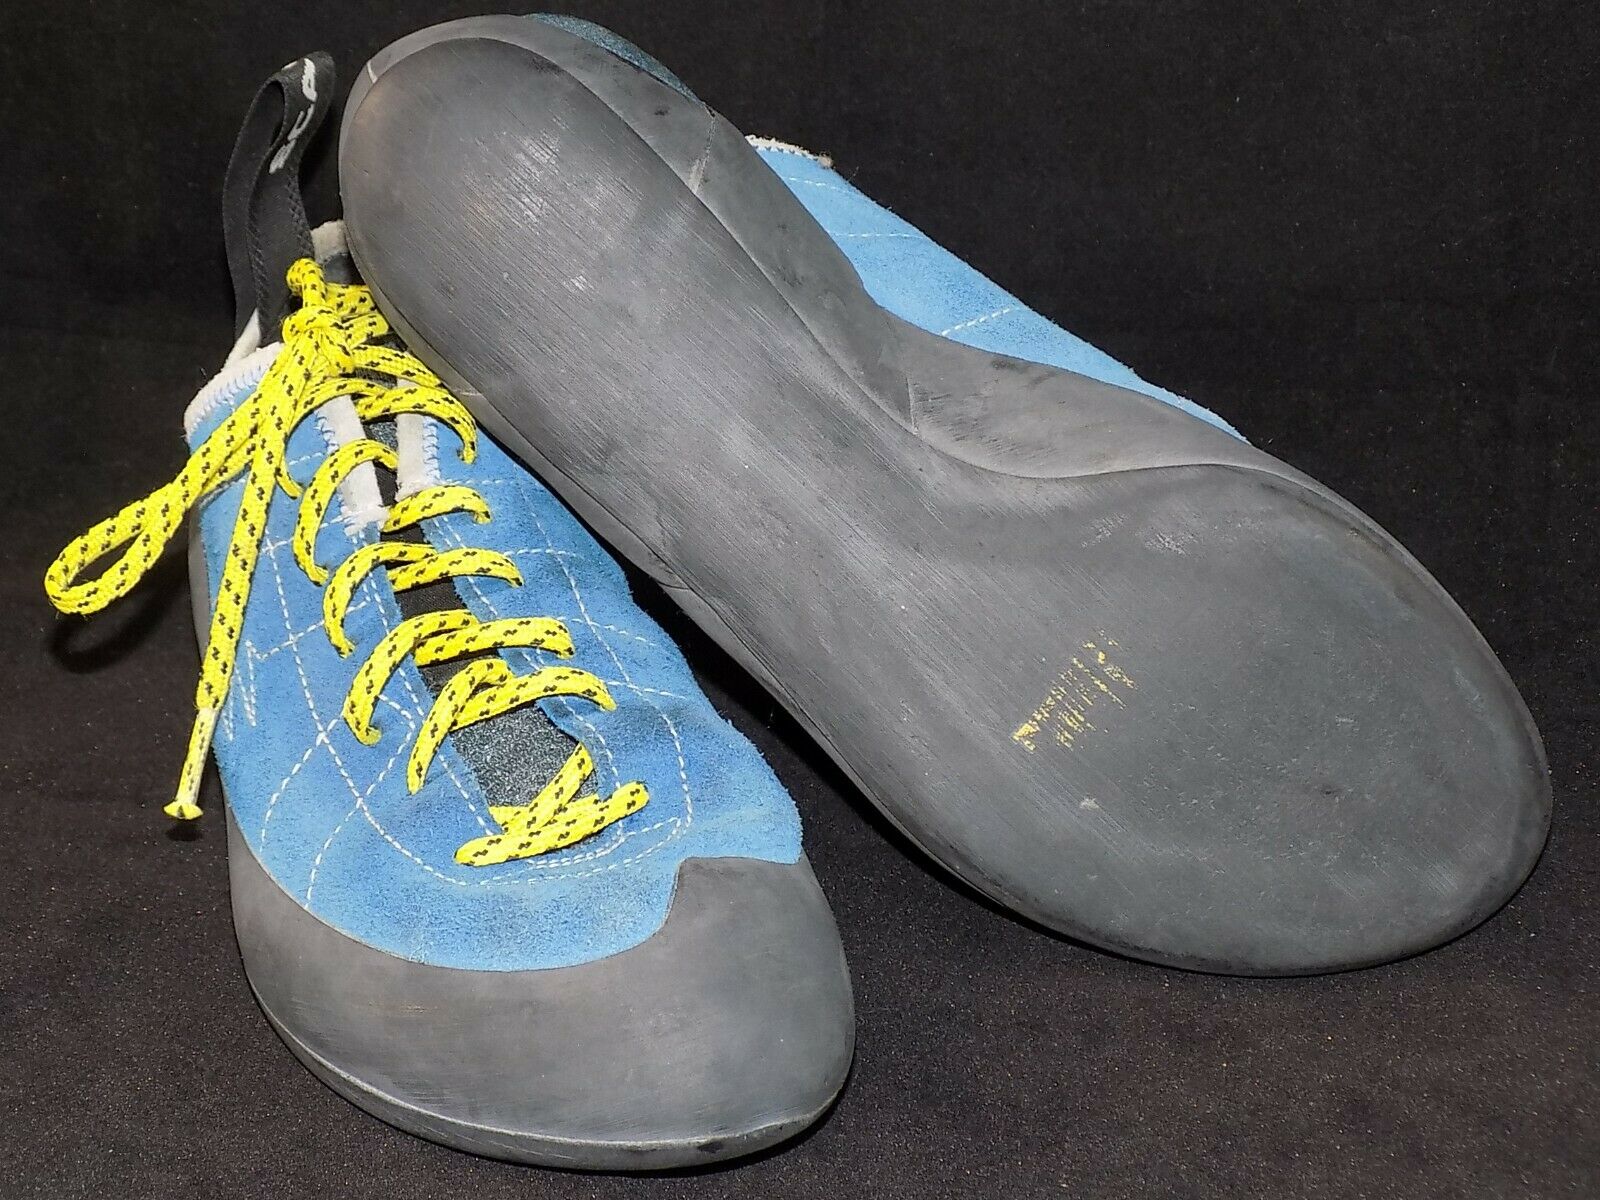 Scarpa Helix Men's Hyper Blue Suede Lace Up Climbing Shoes, 8m Us / 41 Eu